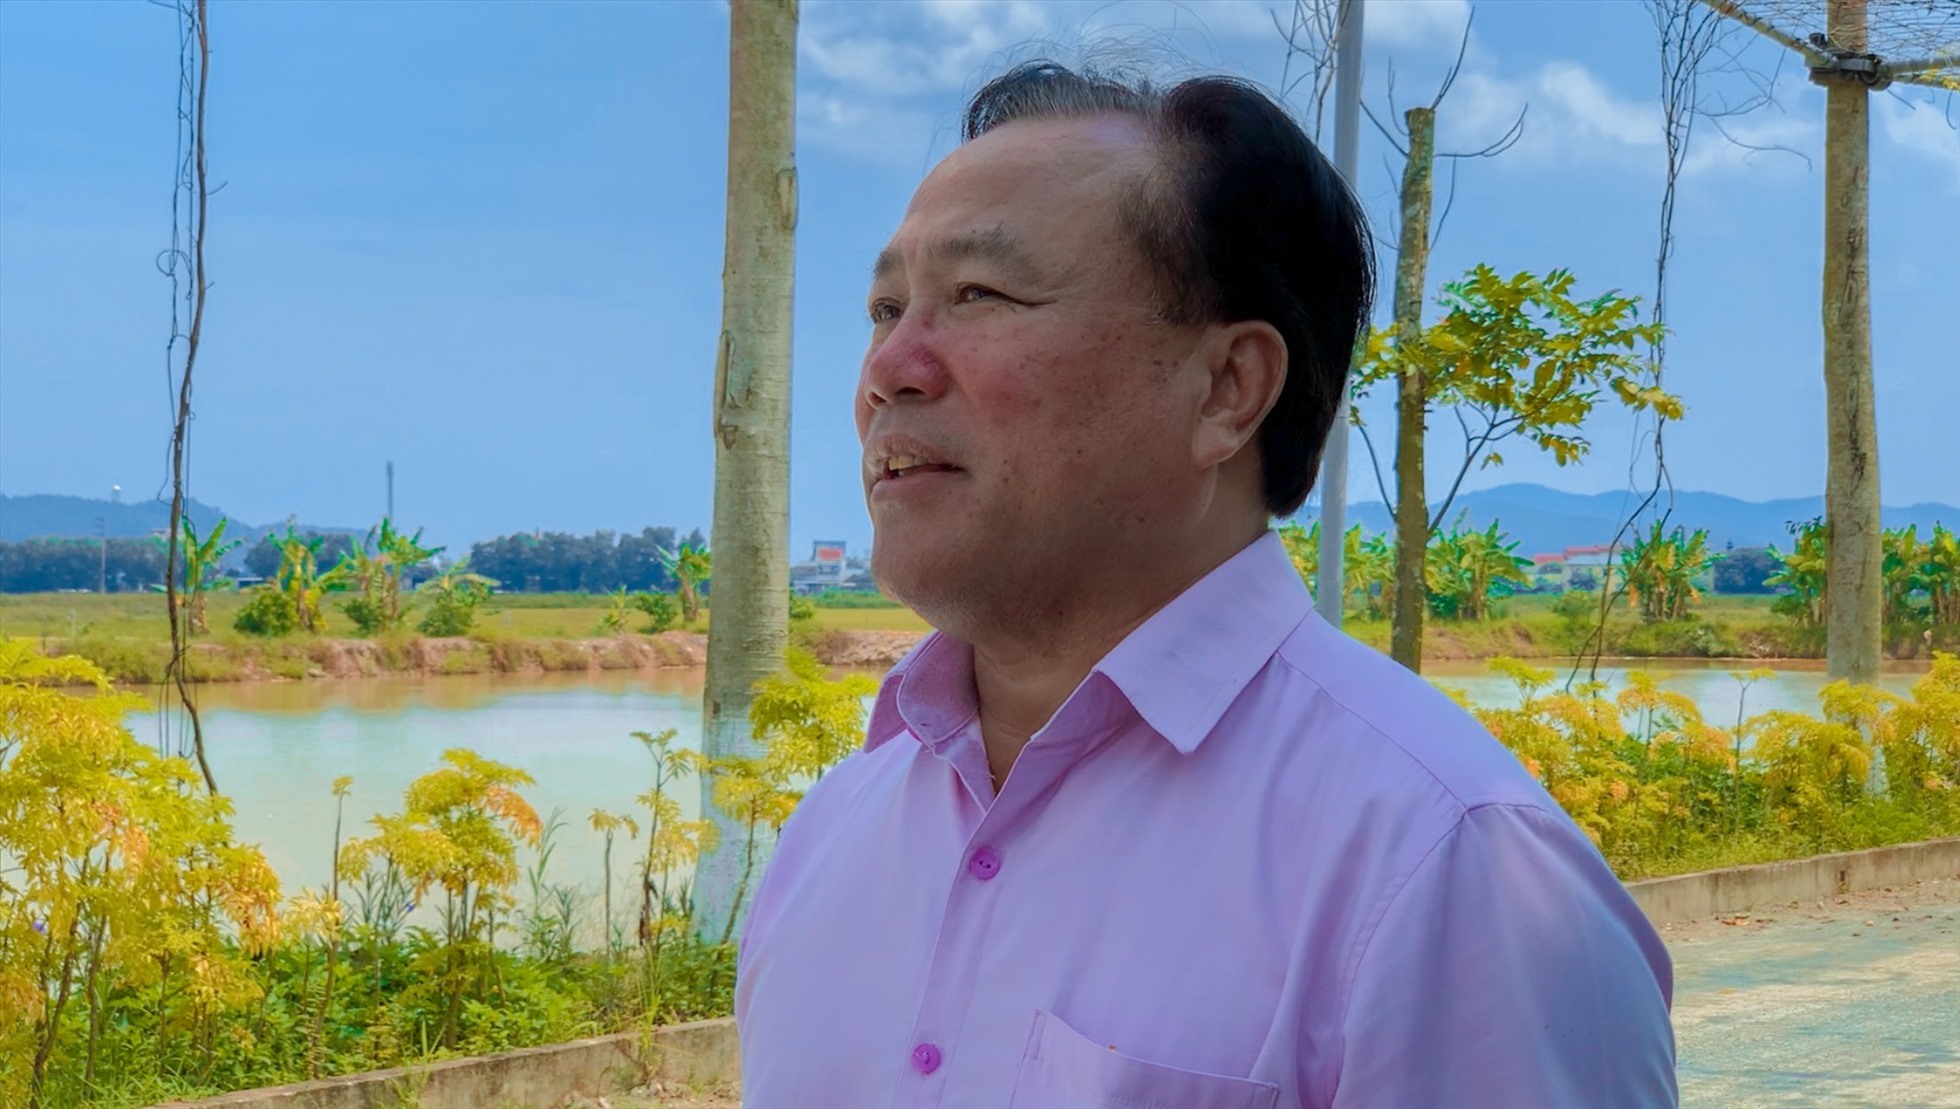 Ông Nguyễn Như Ý - Tổng Giám đốc Công ty Cổ phần Synot Asean cam kết đầu tư tiếp 1.000 tỉ đồng để xây dựng khu du lịch sinh thái nếu được tỉnh chấp thuận điều chỉnh dự án. Ảnh: Hải Đăng.